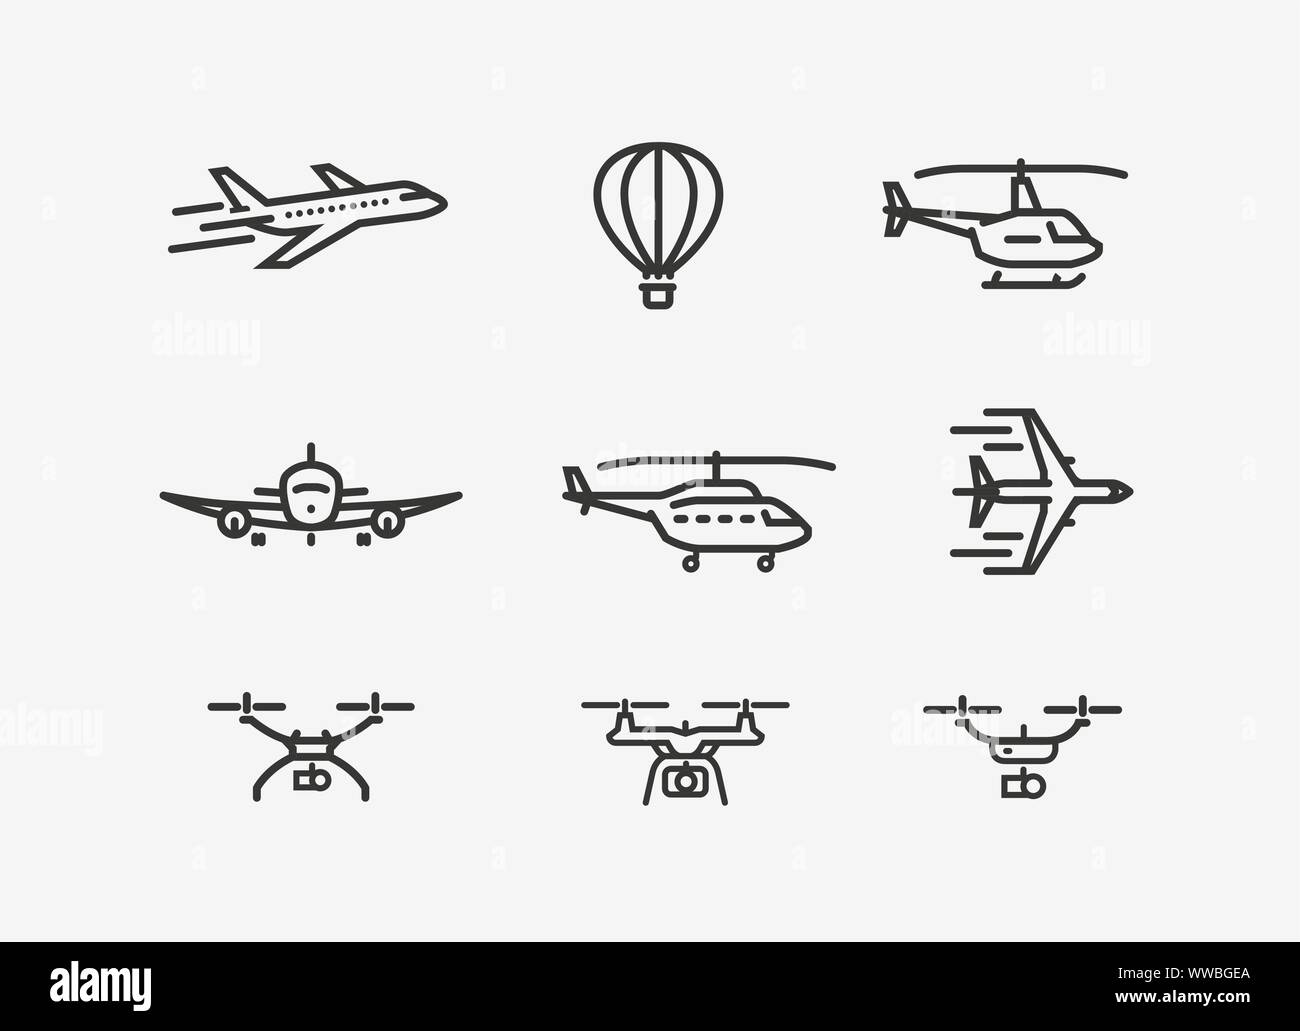 Flugzeugsymbol. Transportsymbol in linearer Form. Vektorgrafik Stock Vektor